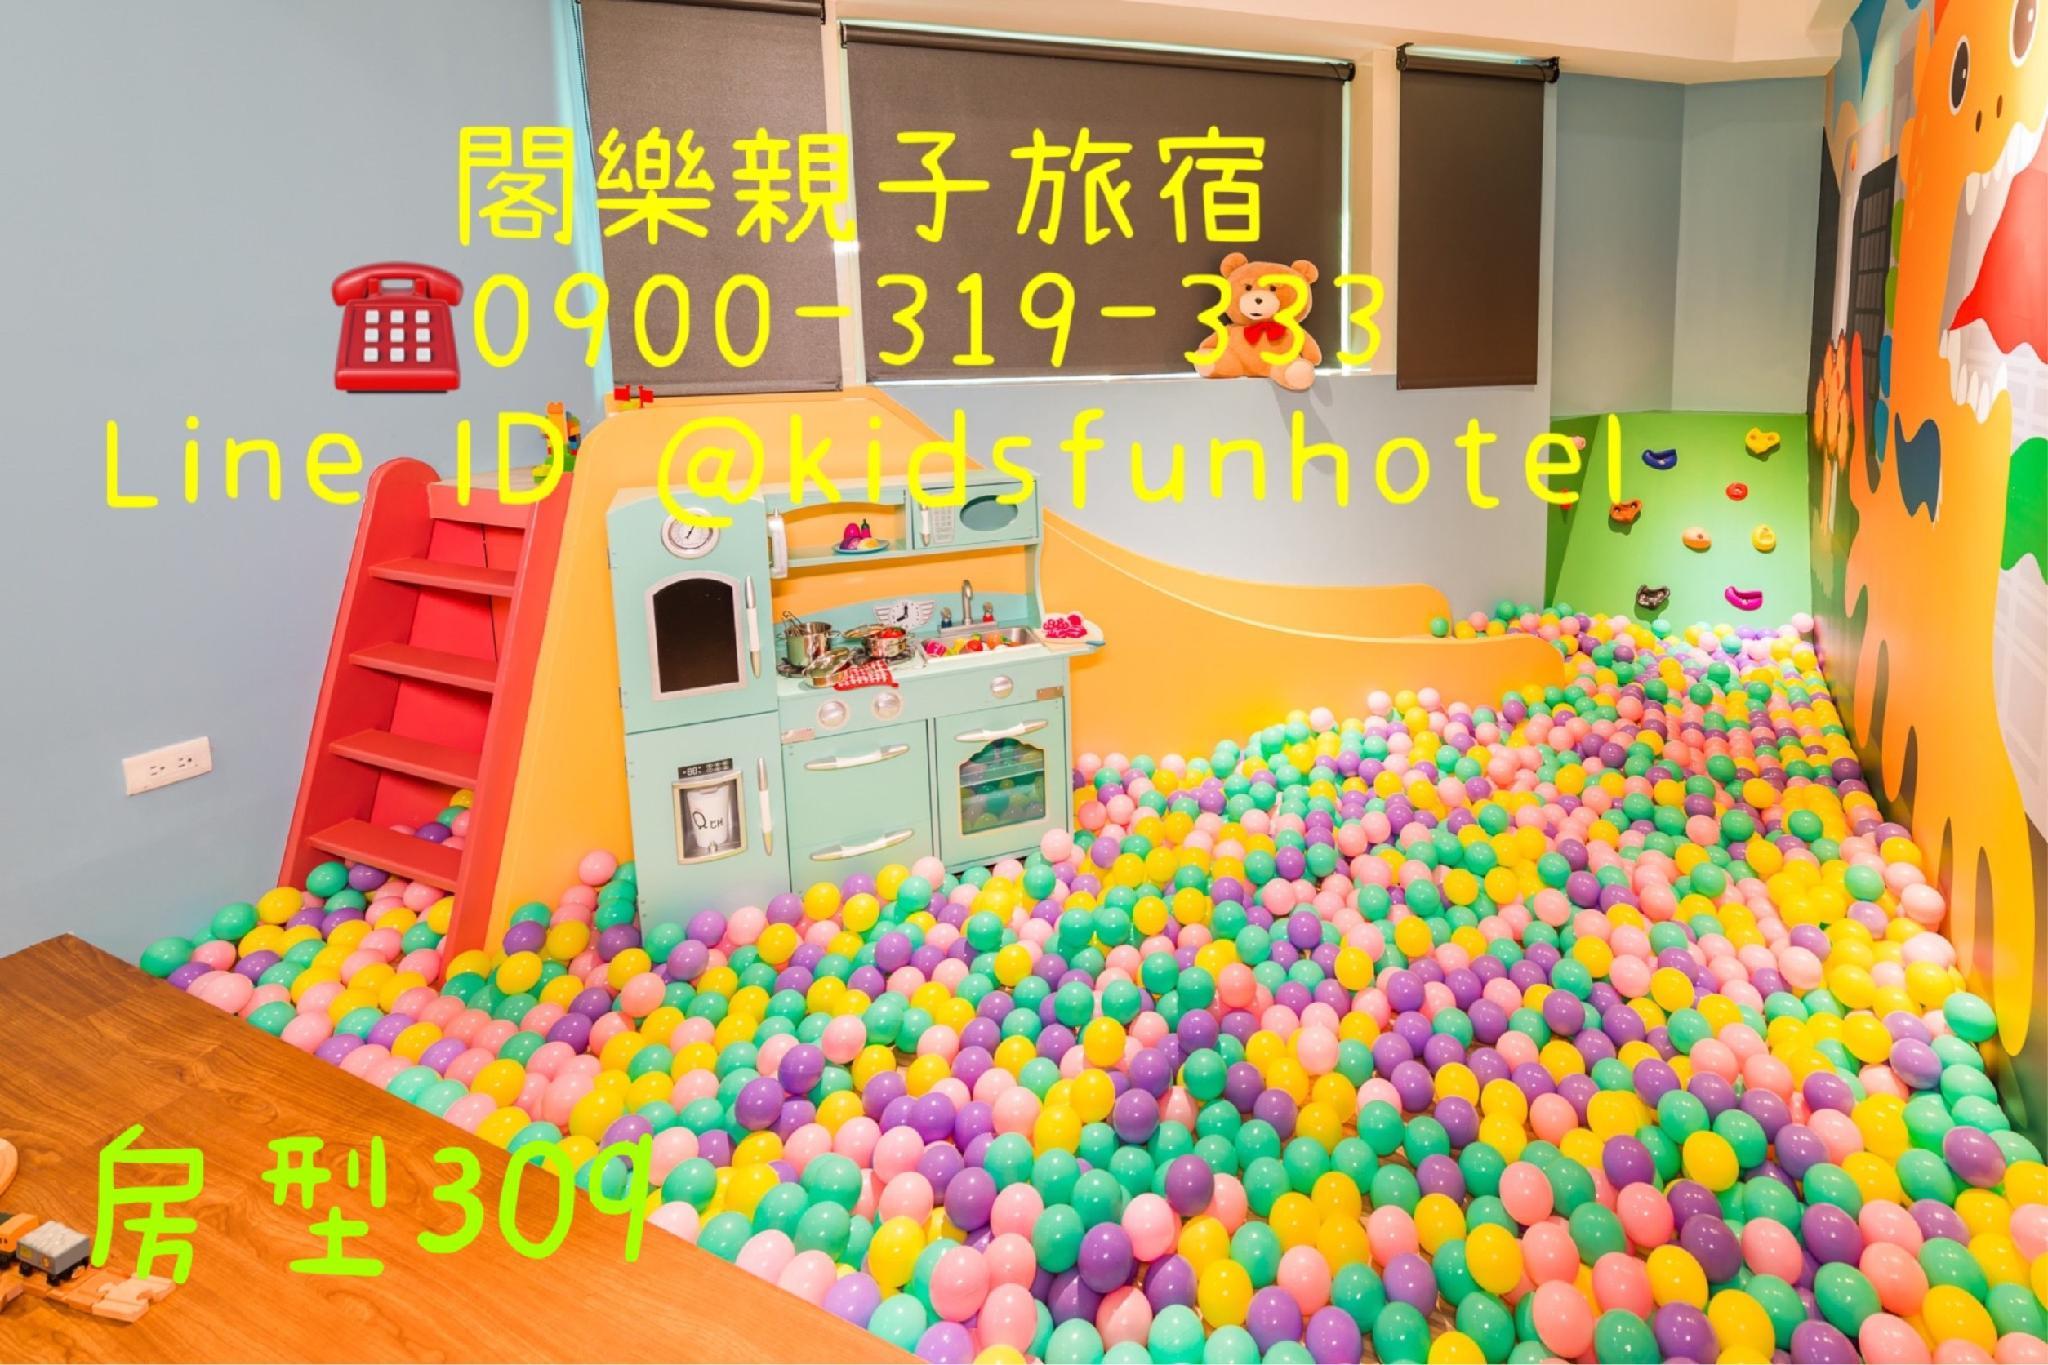 Kids Fun Hotel - 羅東